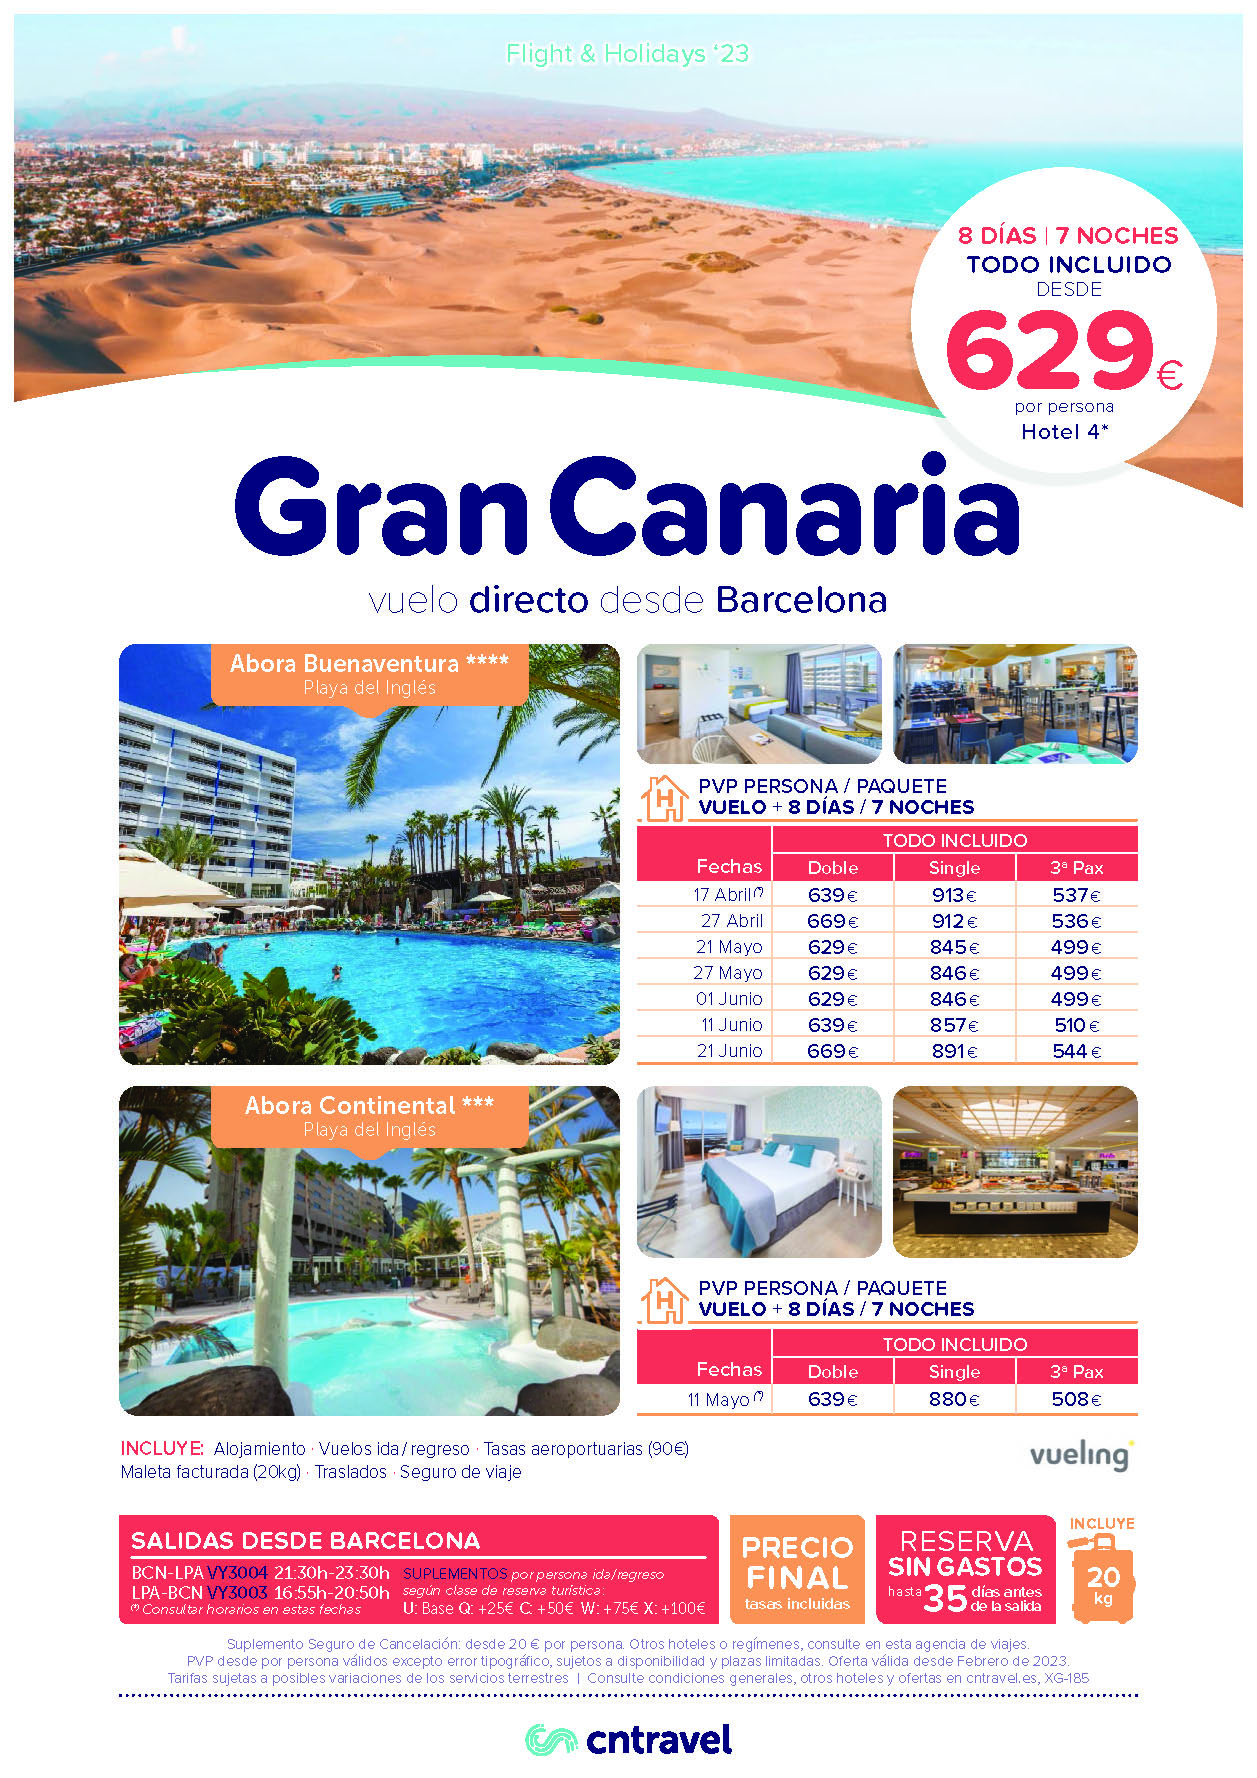 Ofertas CN Travel Abril Mayo Junio 2023 Estancia en Gran Canaria 8 dias Hotel 4 estrellas Todo Incluido vuelo directo desde Barcelona